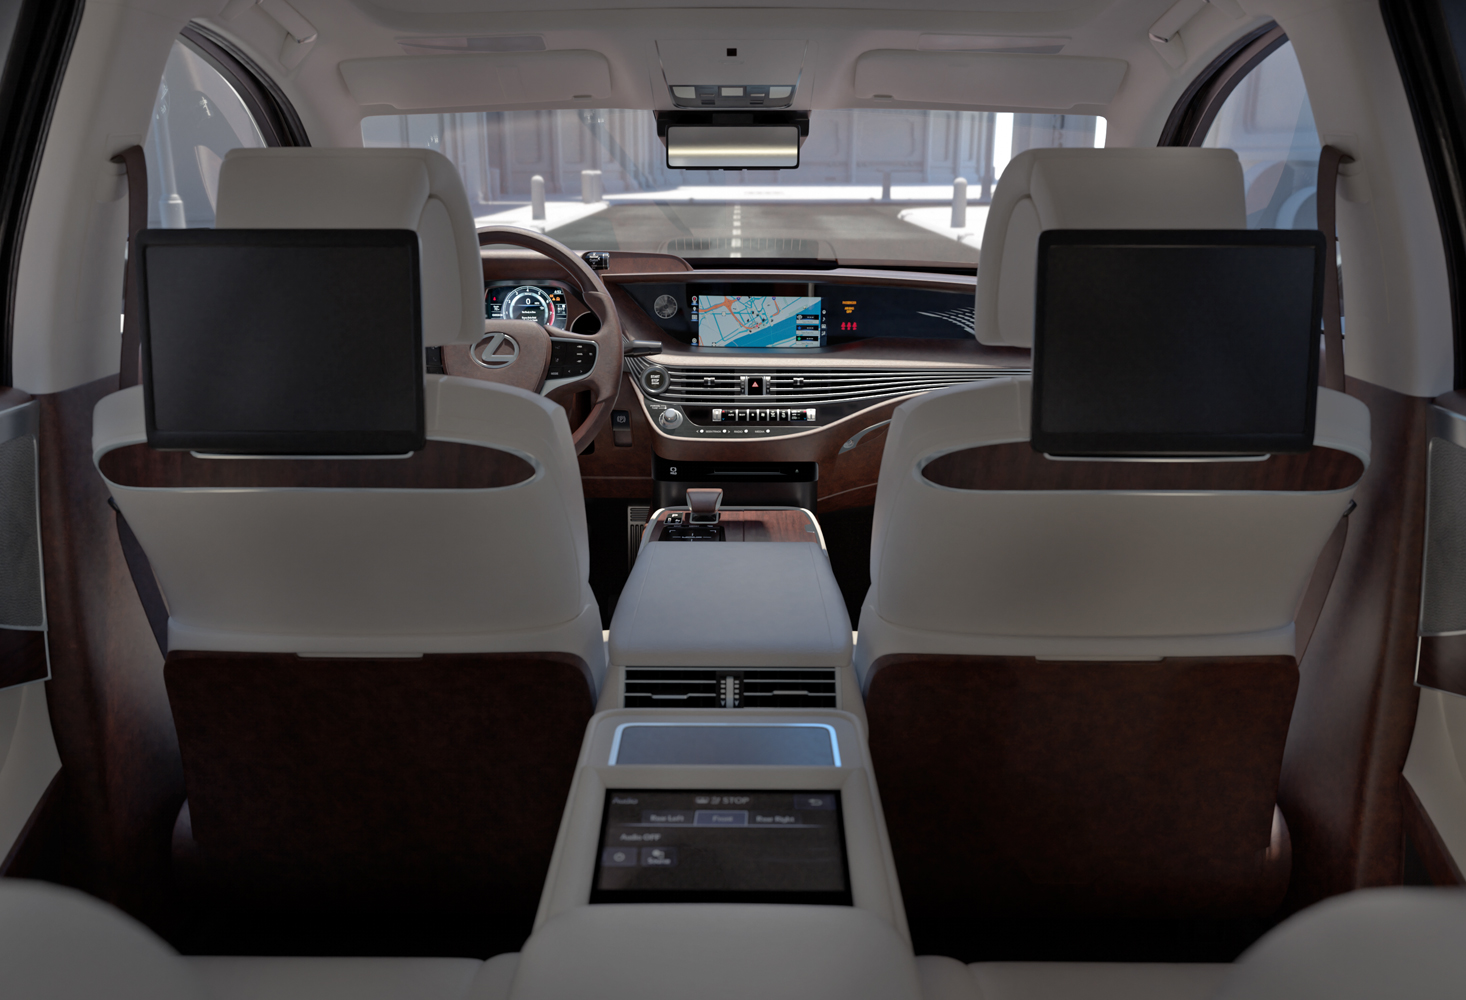 Studio Capicua Our Visual Work Lexus Ls Cgi Car Interior